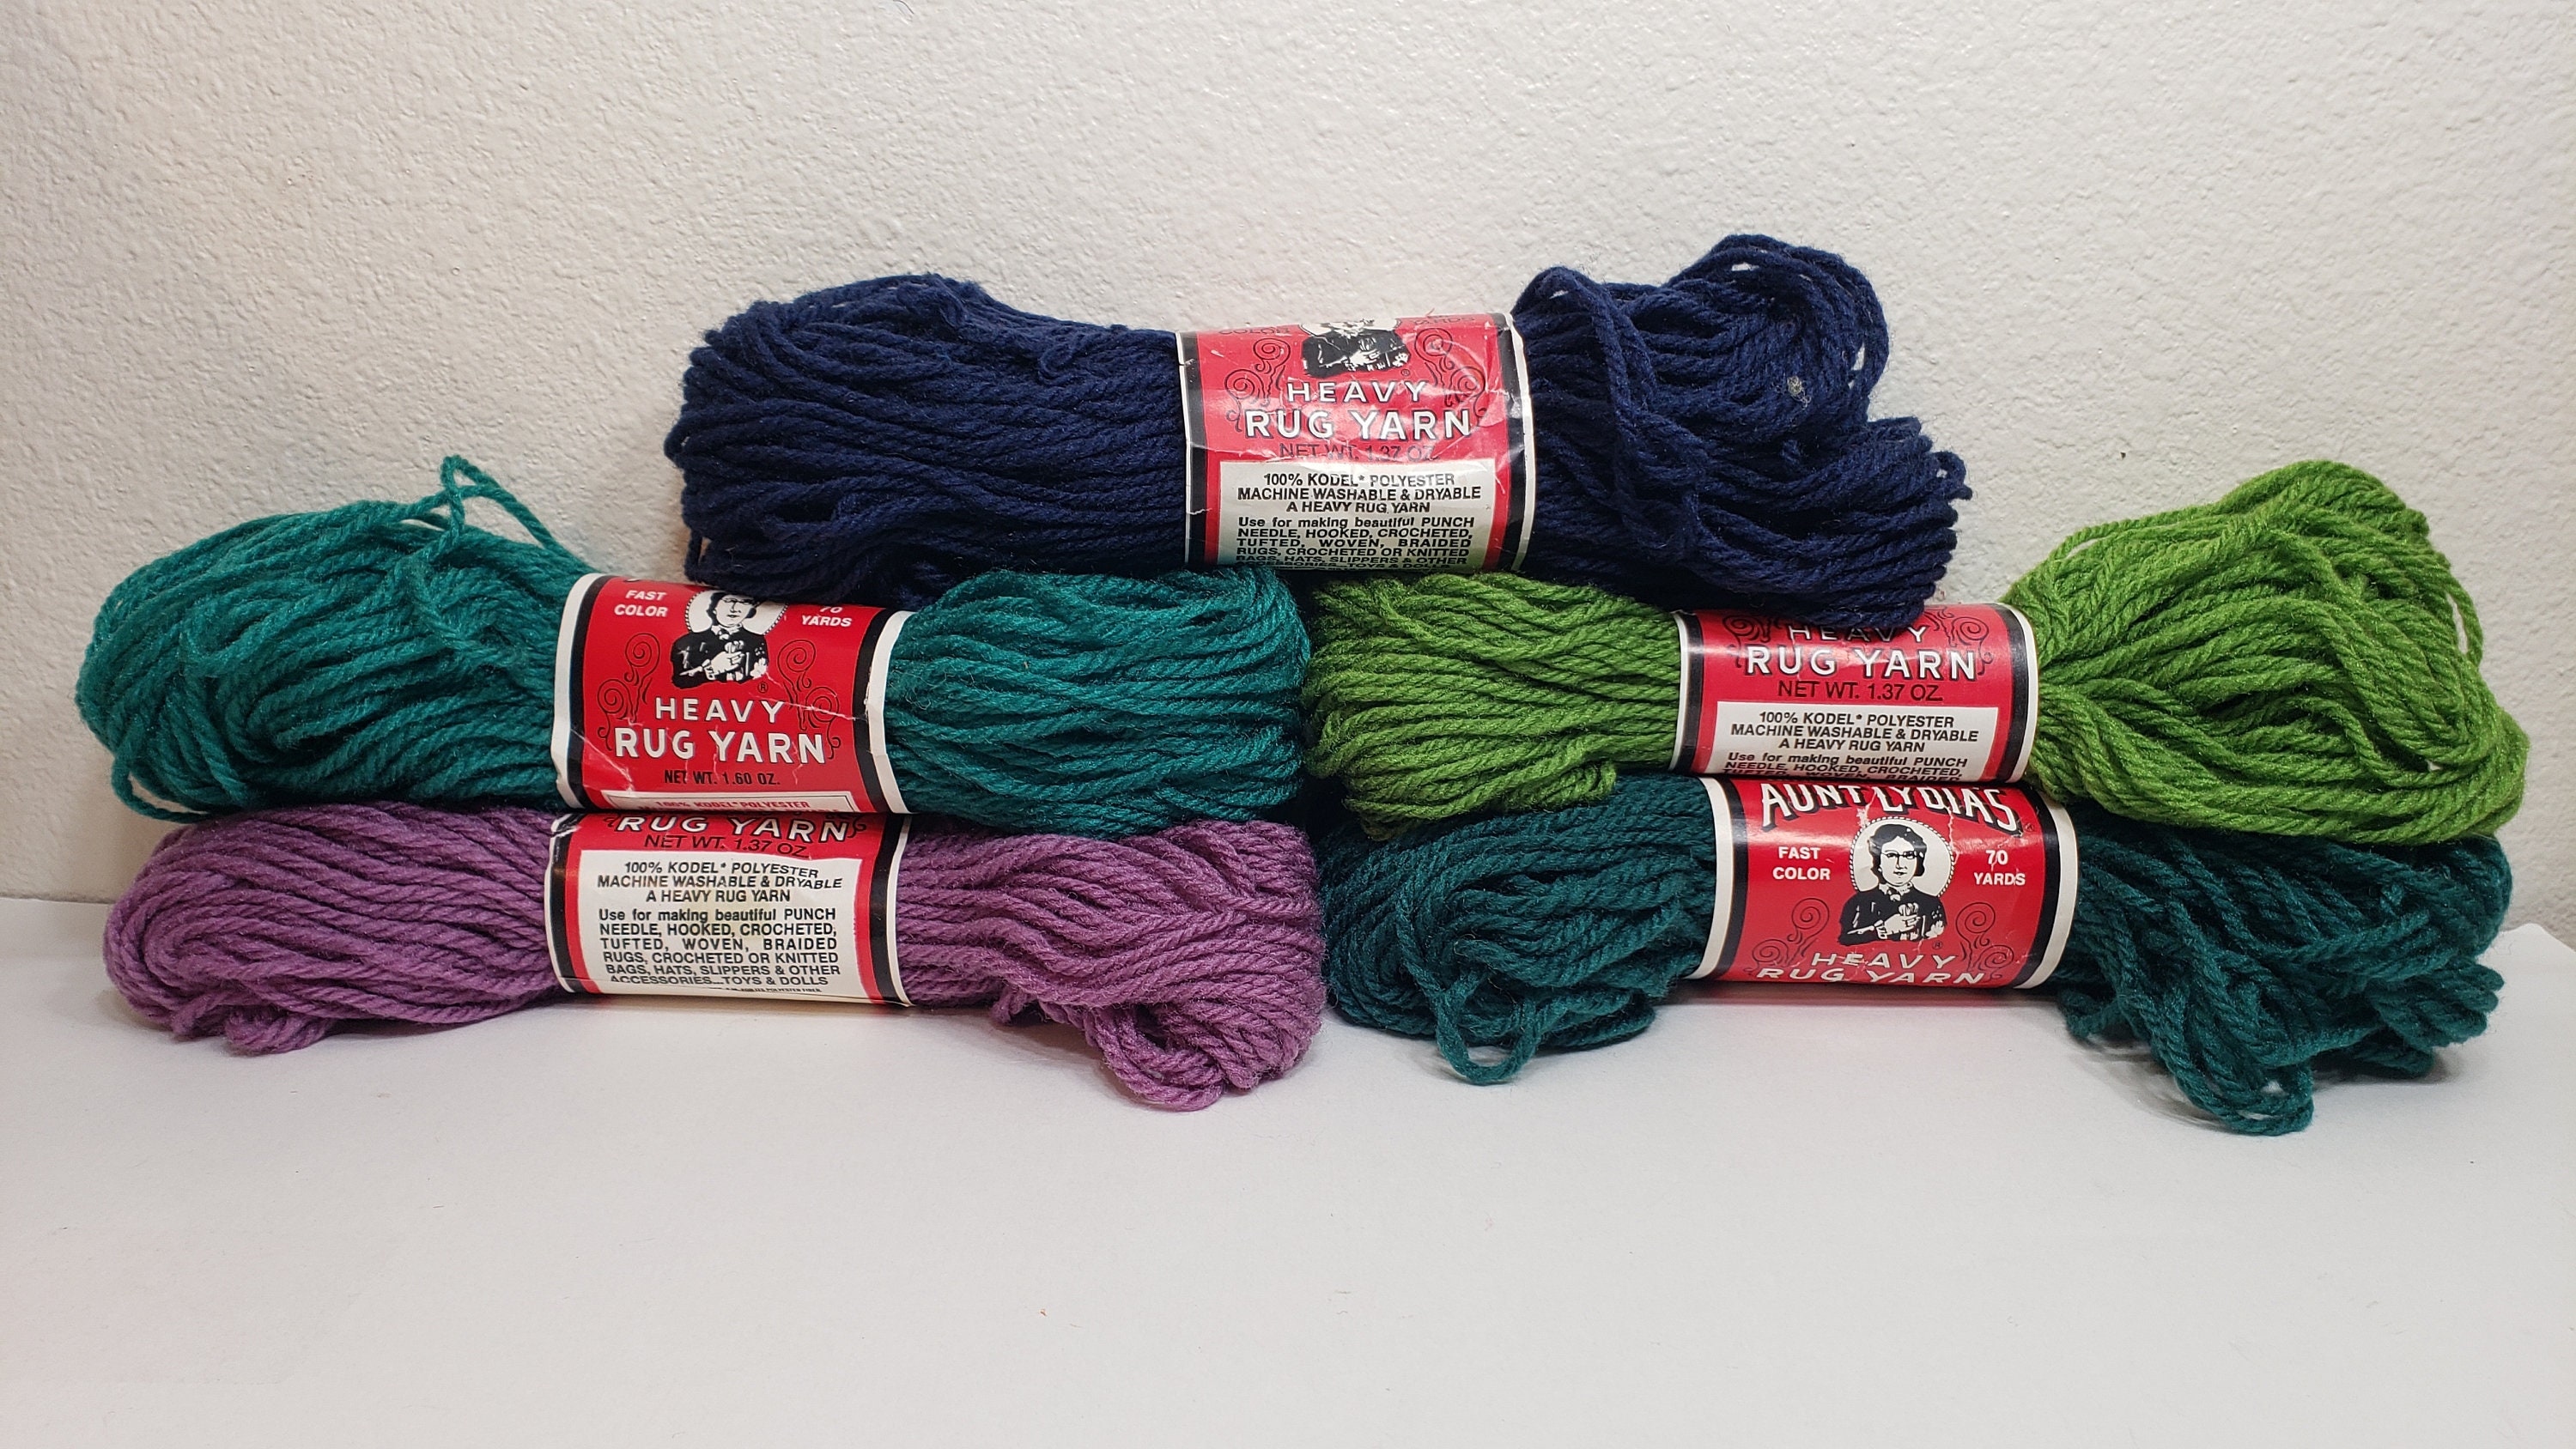 Crochet Yarn Cotton Crocheting Yarn Knitting Yarn Tufting Yarn for Tufting  DIY (84 Dark Green)